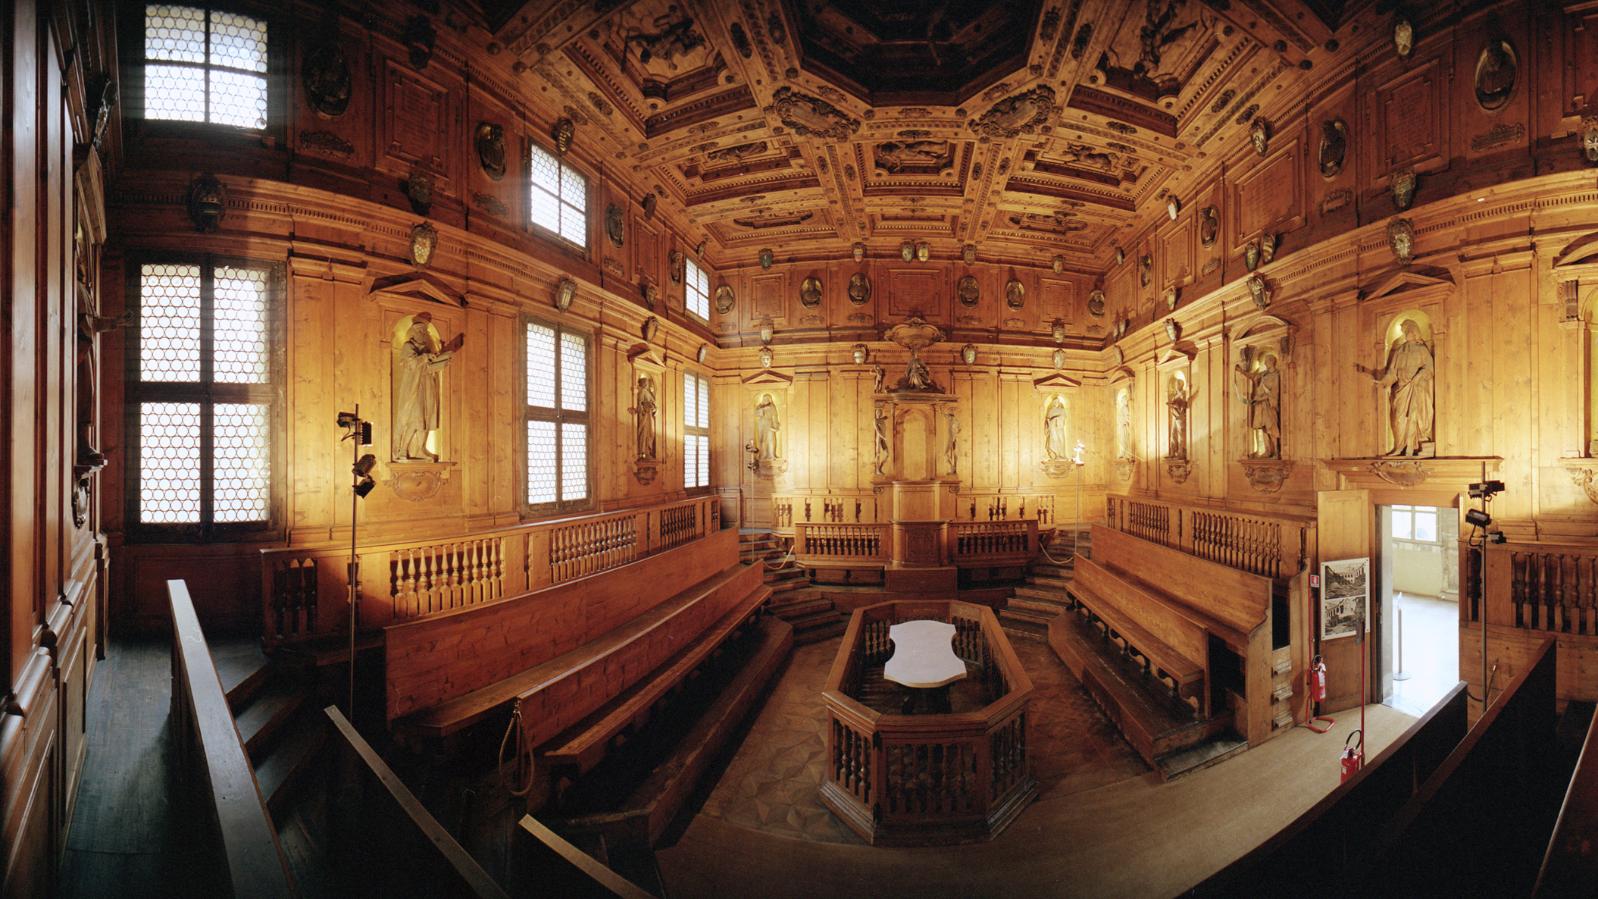 Teatro Anatomico, Bologna / anatomical theatre, Bologna